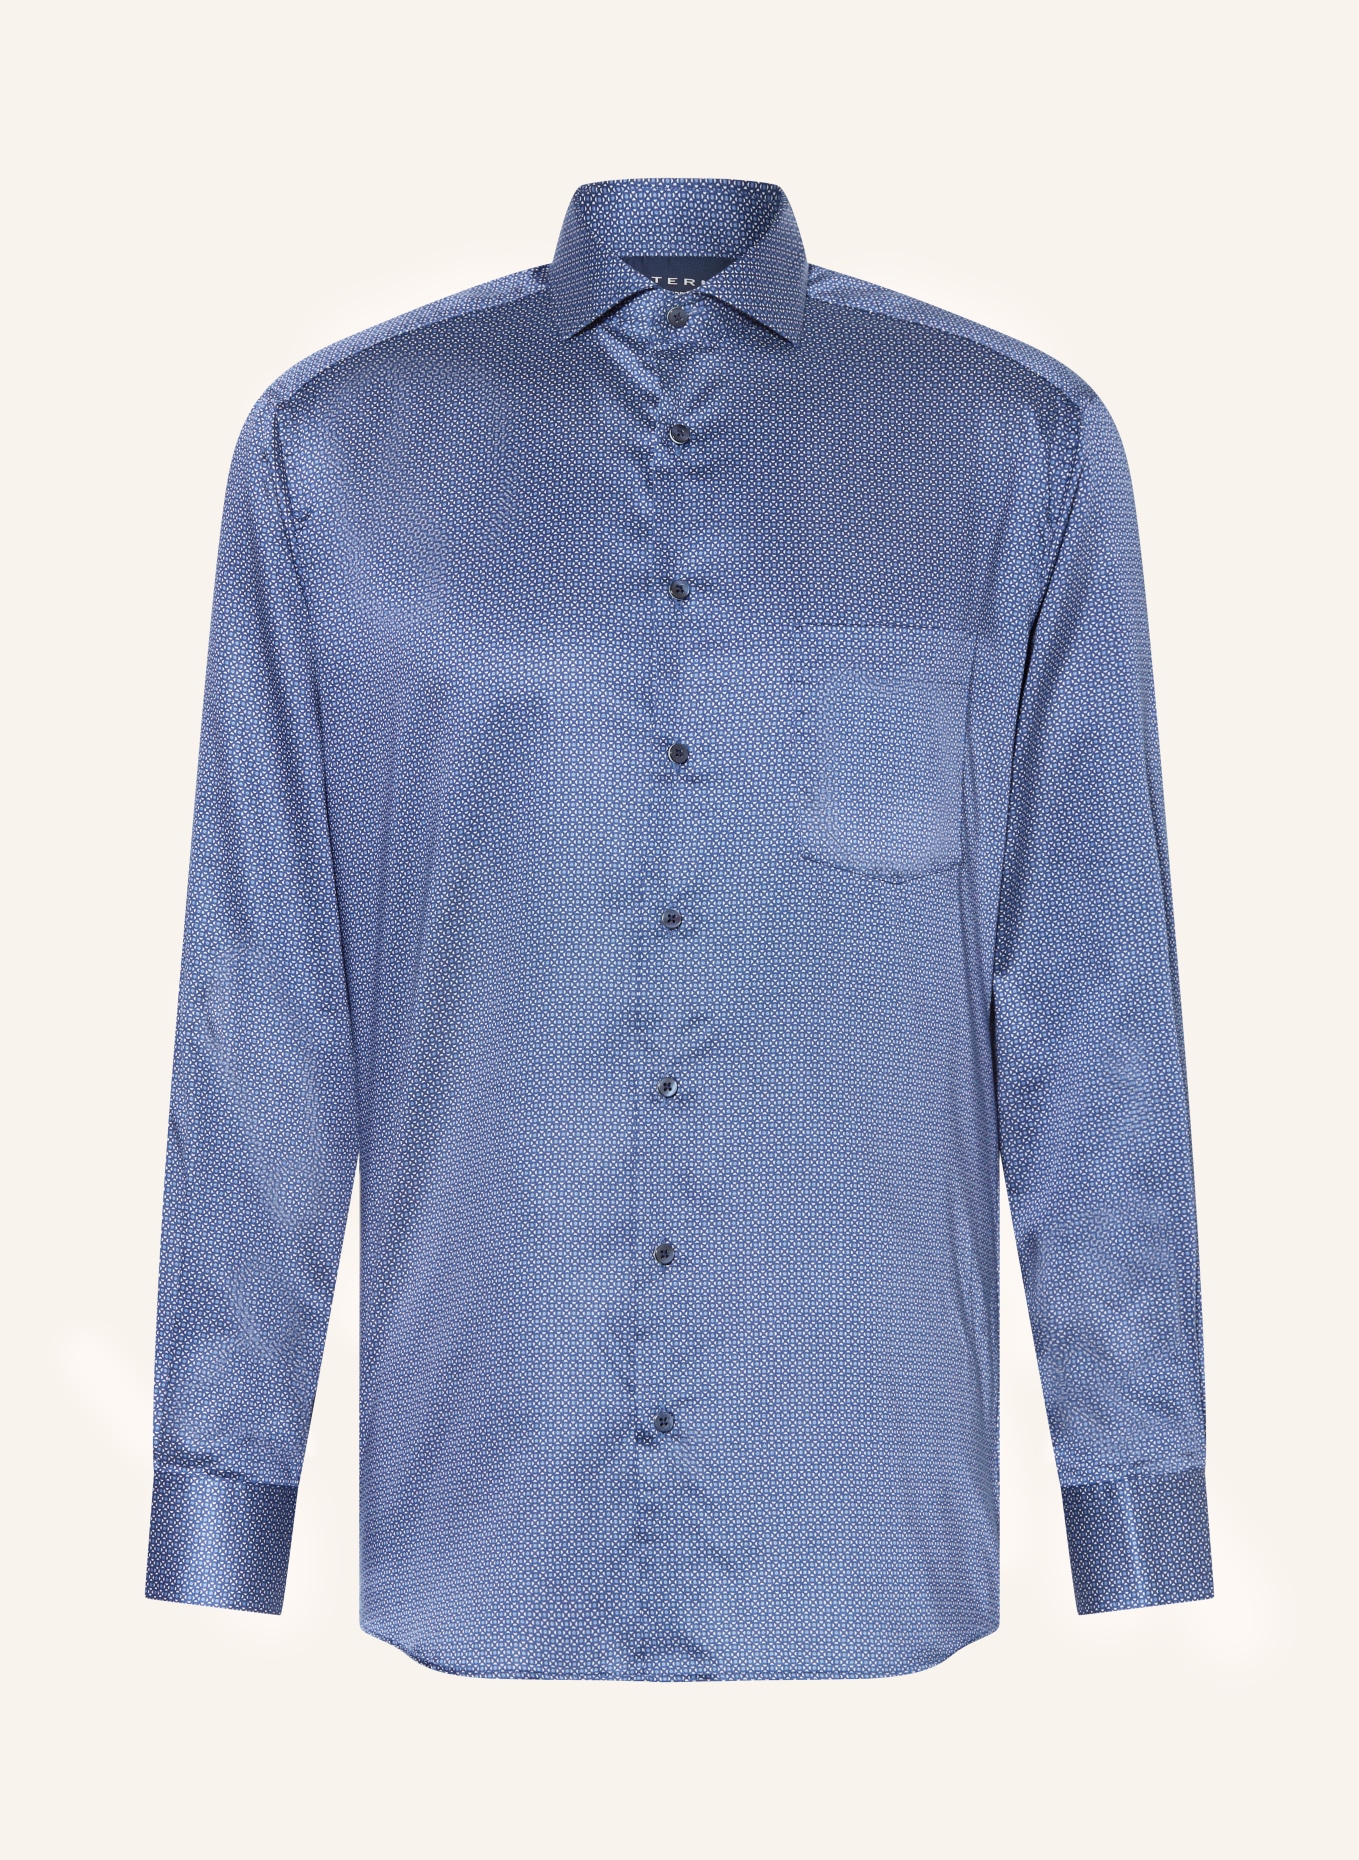 in modern blue/ blue/ ETERNA Shirt dark fit white